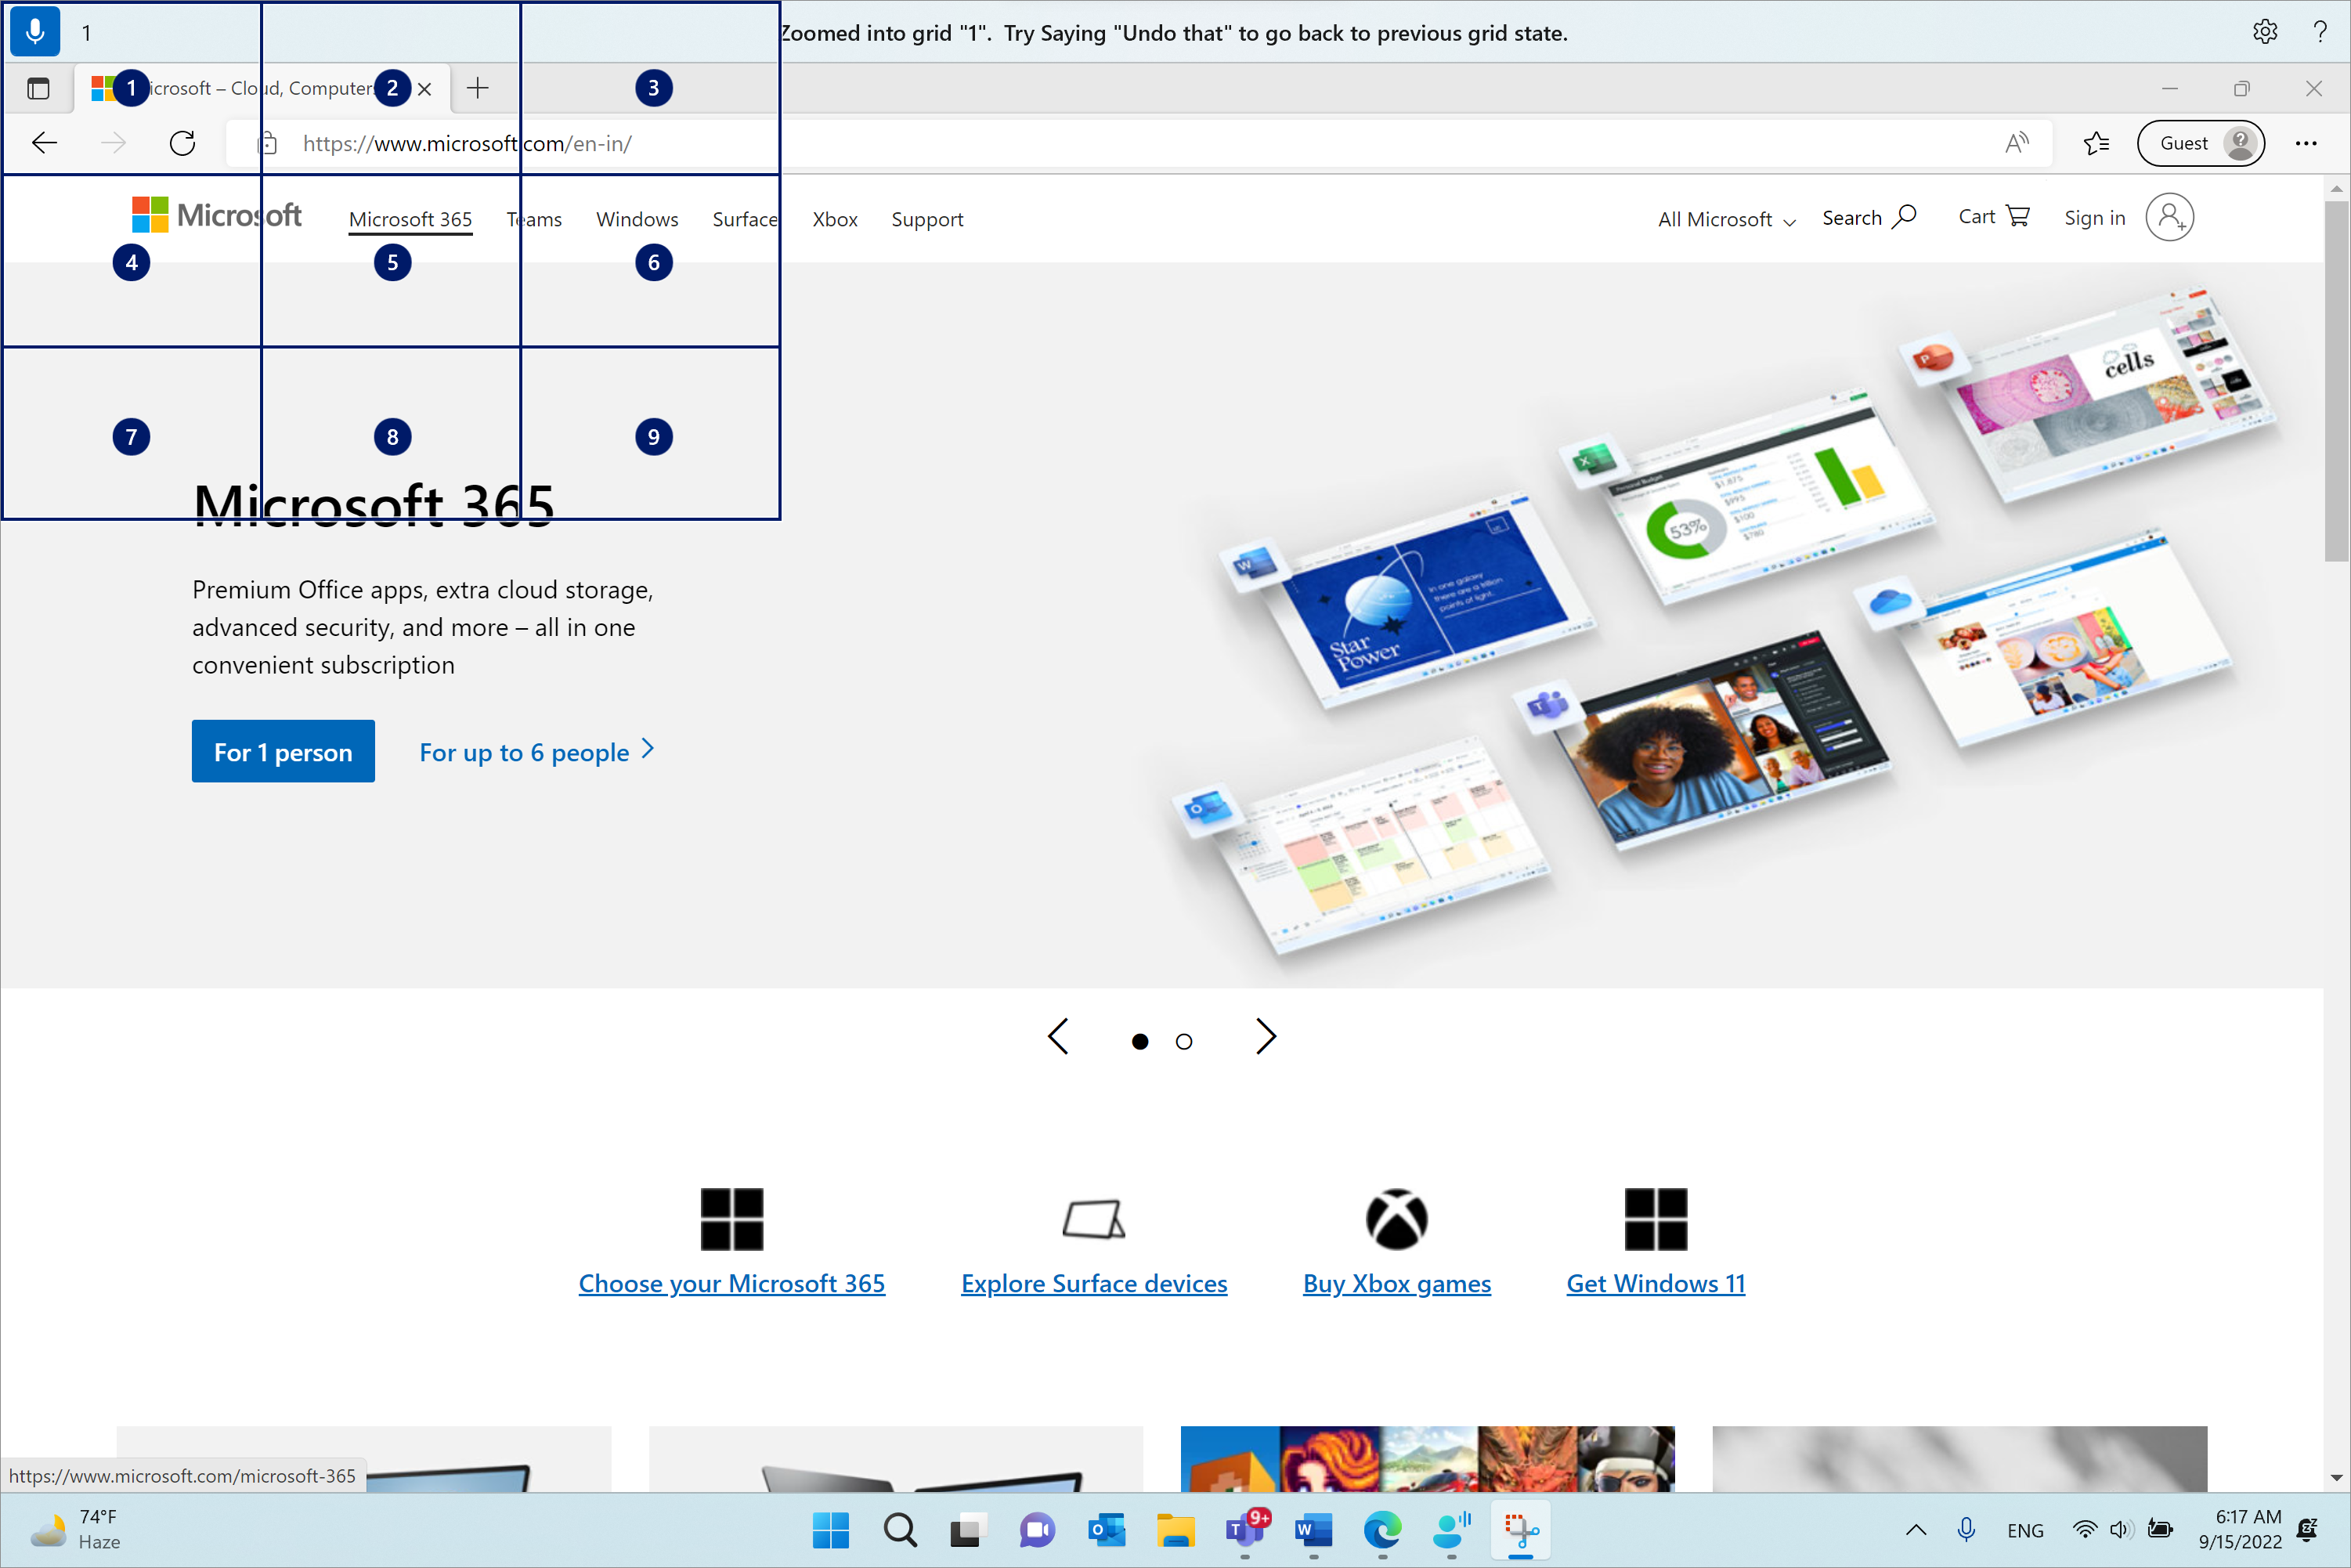 Microsoft Edge er åben og på siden Microsoft.com. Stemmeadgangslinjen er øverst og i lyttetilstand. Den udstedte kommando er "1", og den viste feedback er "Zoomet ind i gitter "1". Prøv at sige "fortryd det" for at gå tilbage til den forrige gittertilstand."